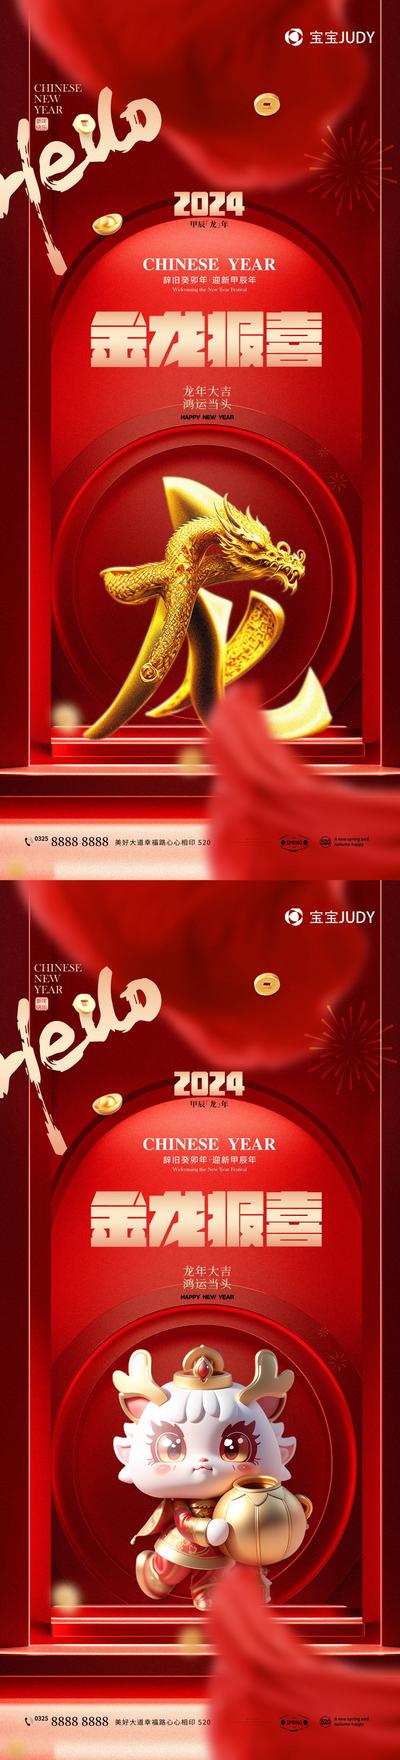 【南门网】广告 海报 新年 龙年 元旦 2024 春节 龙 元素 立体 文字 系列 品质